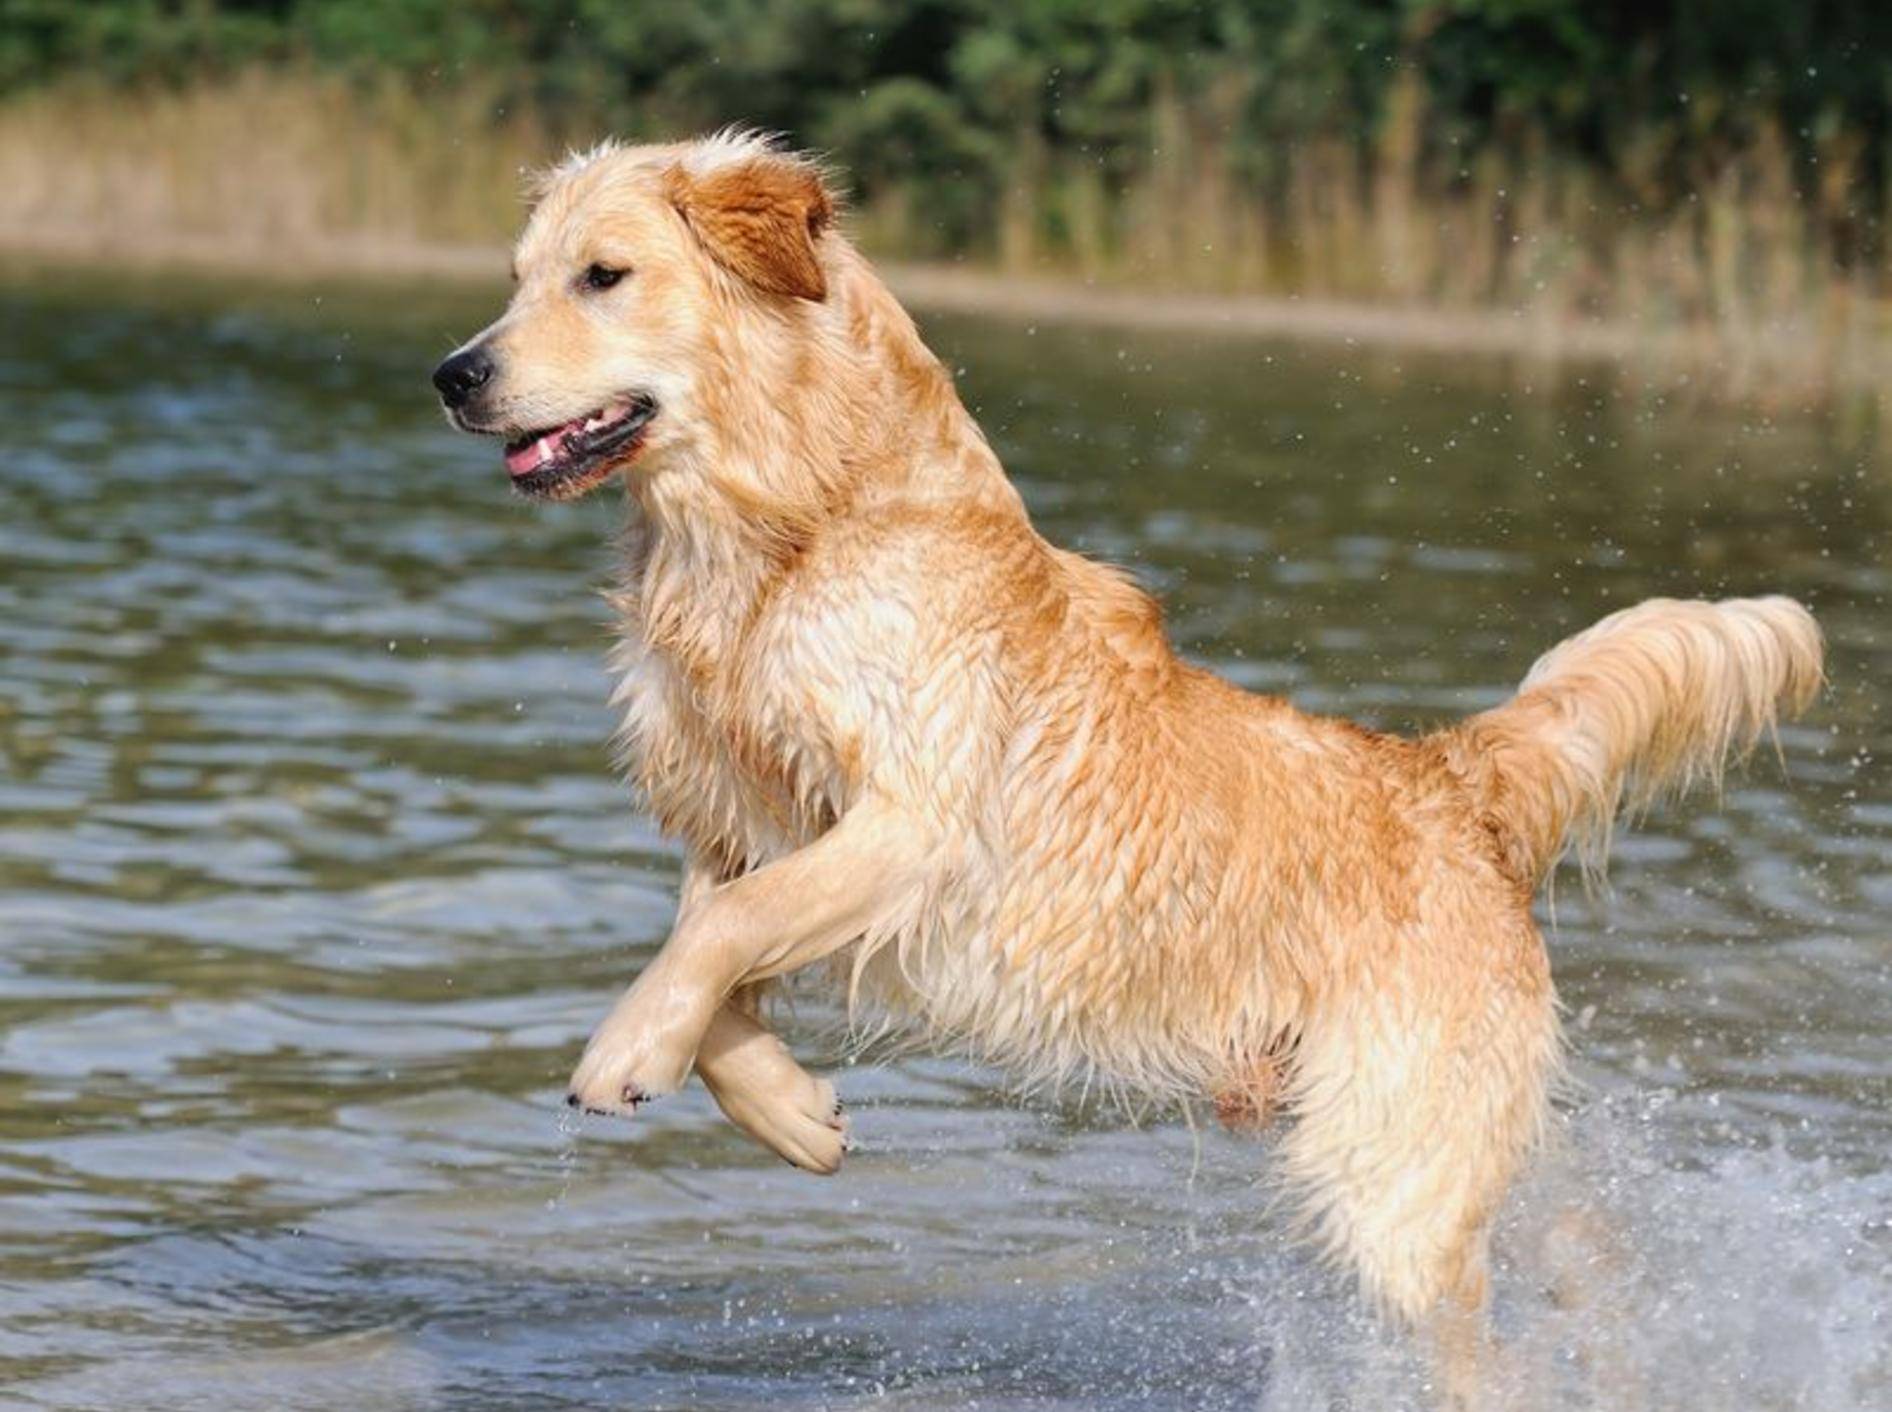 Der Golden Retriever ist ein Hund, der sich im und am Wasser pudelwohl fühlt. – Bild: Shutterstock / AnetaPics